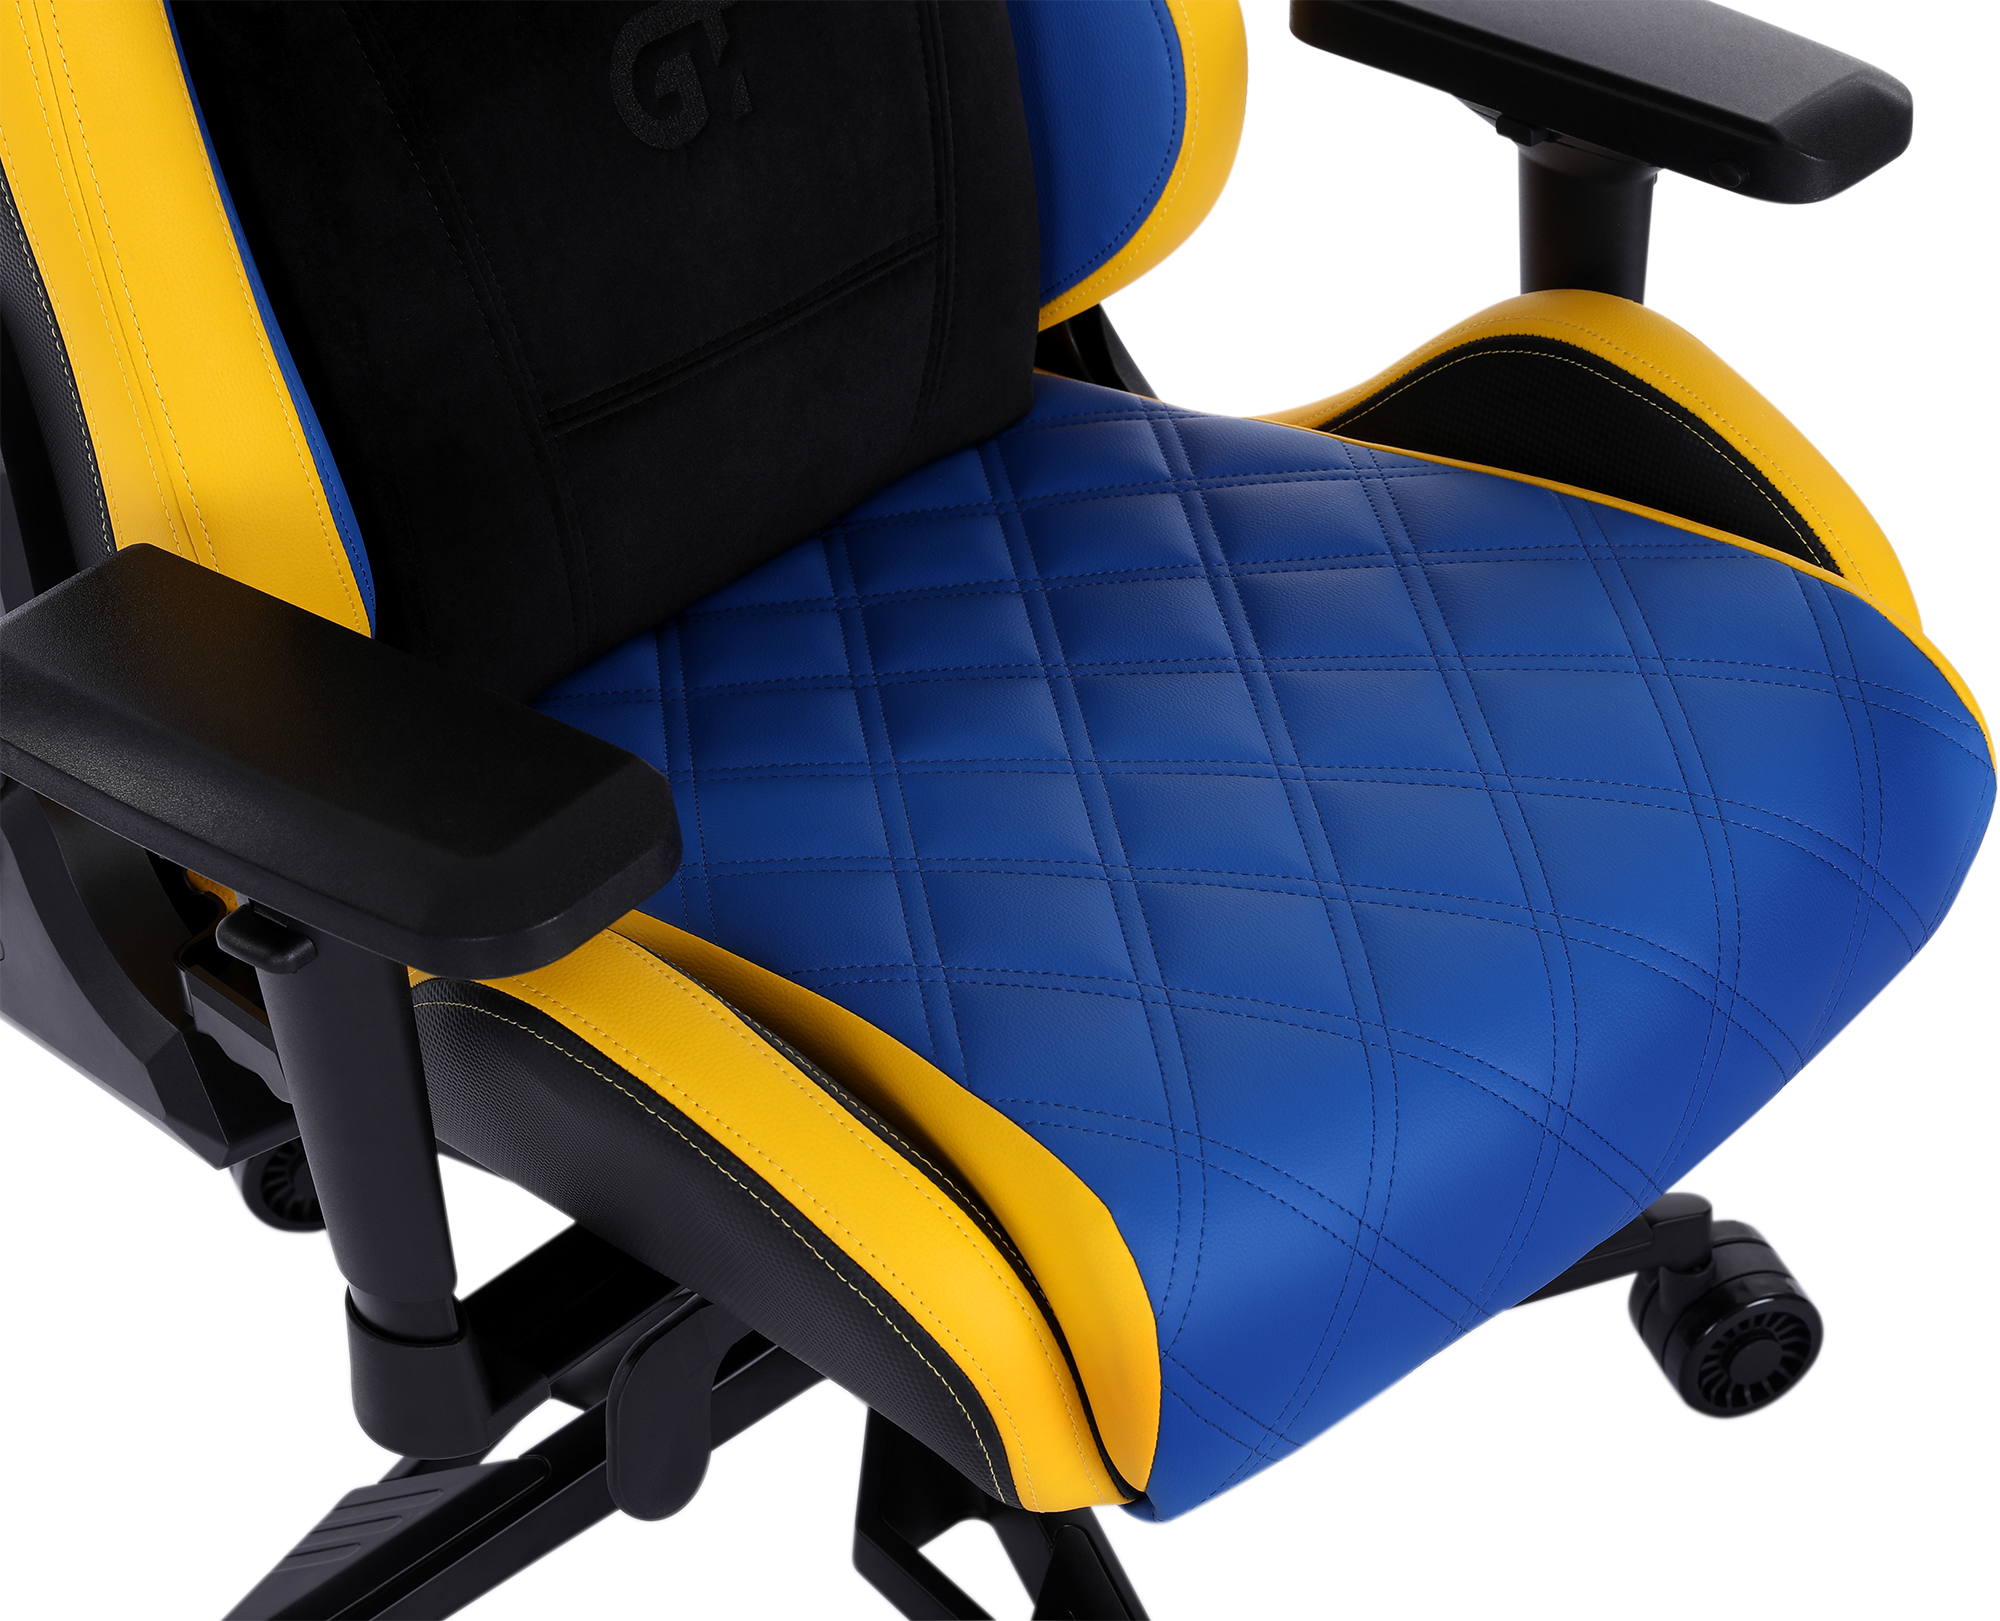 Геймерське крісло GT Racer синє з жовтим (X-0724 Blue/Yellow) - фото 8